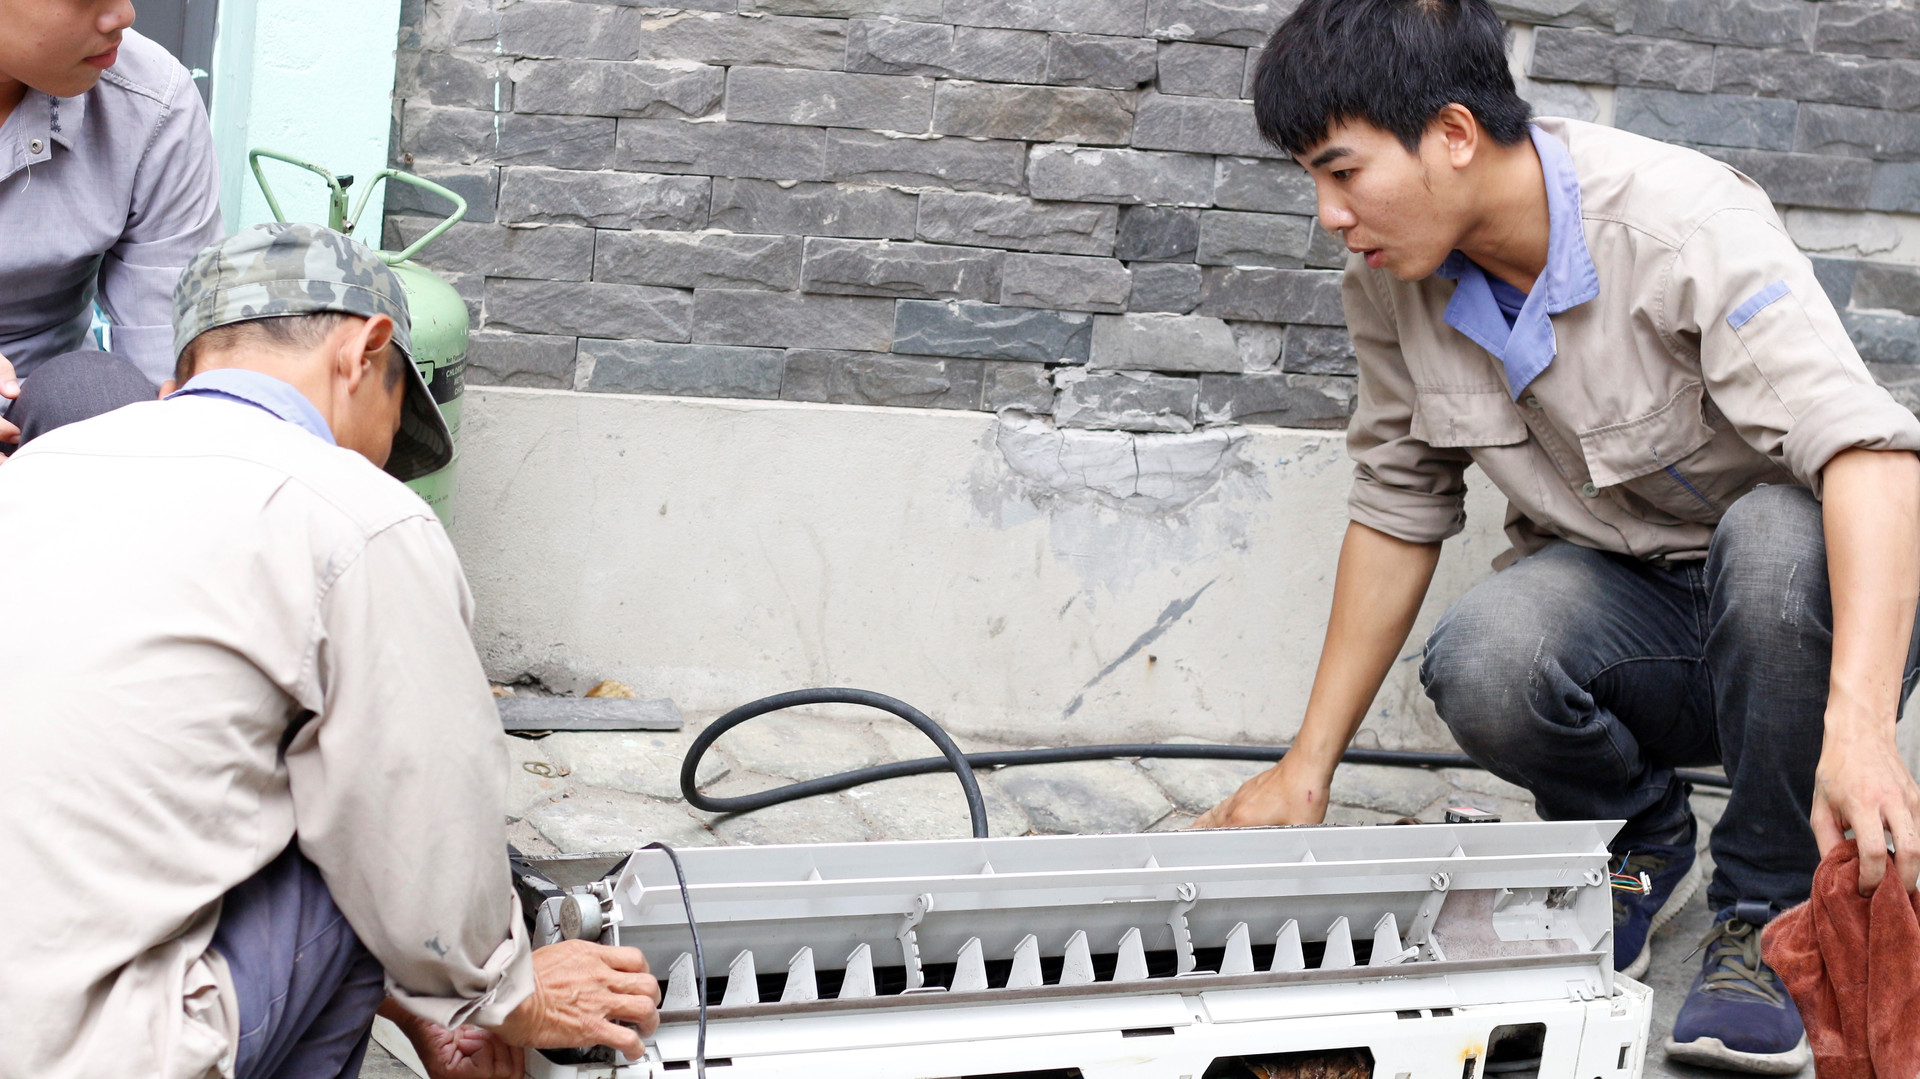 Chú Hùng, 45 tuổi, đồng nghiệp của anh Đức đang vệ sinh vỏ nhựa điều hòa.